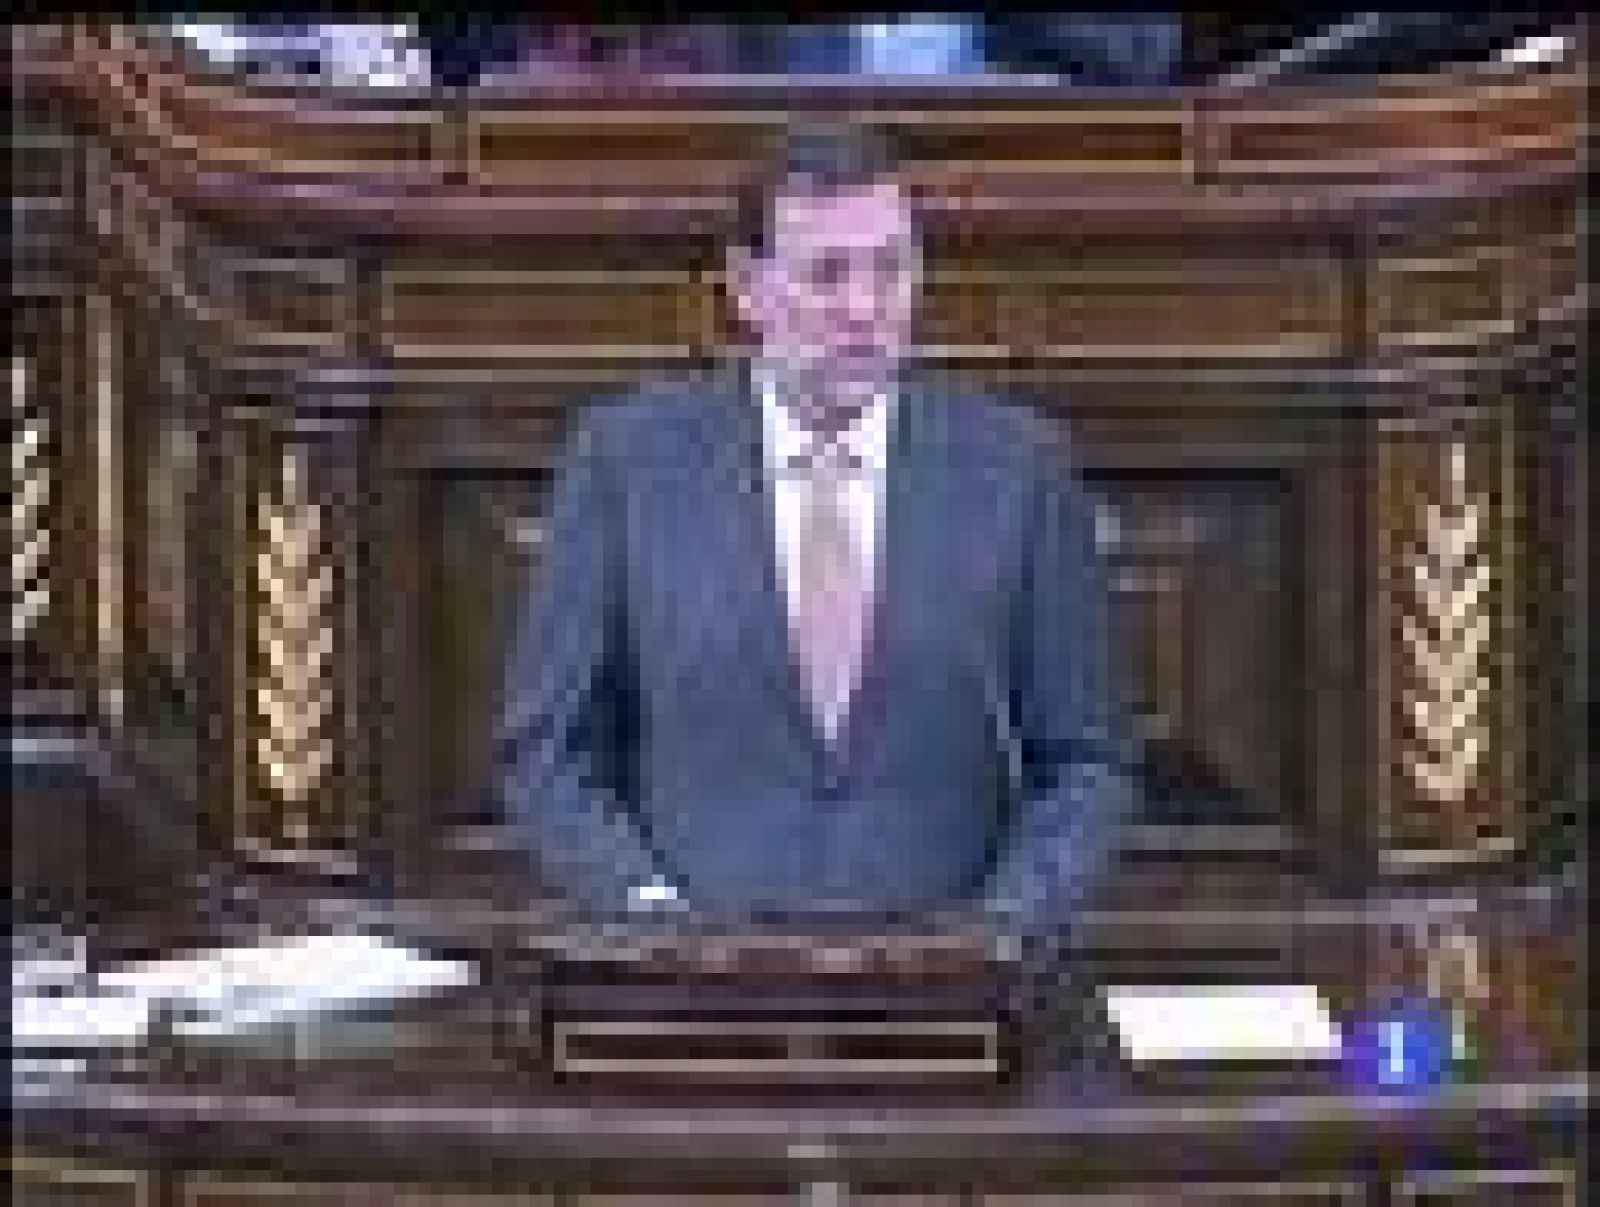 El líder de la oposición, Mariano Rajoy, ha recomendado al Presidente del Gobierno, José Luis Rodríguez Zapatero, "gastar menos y mejor".